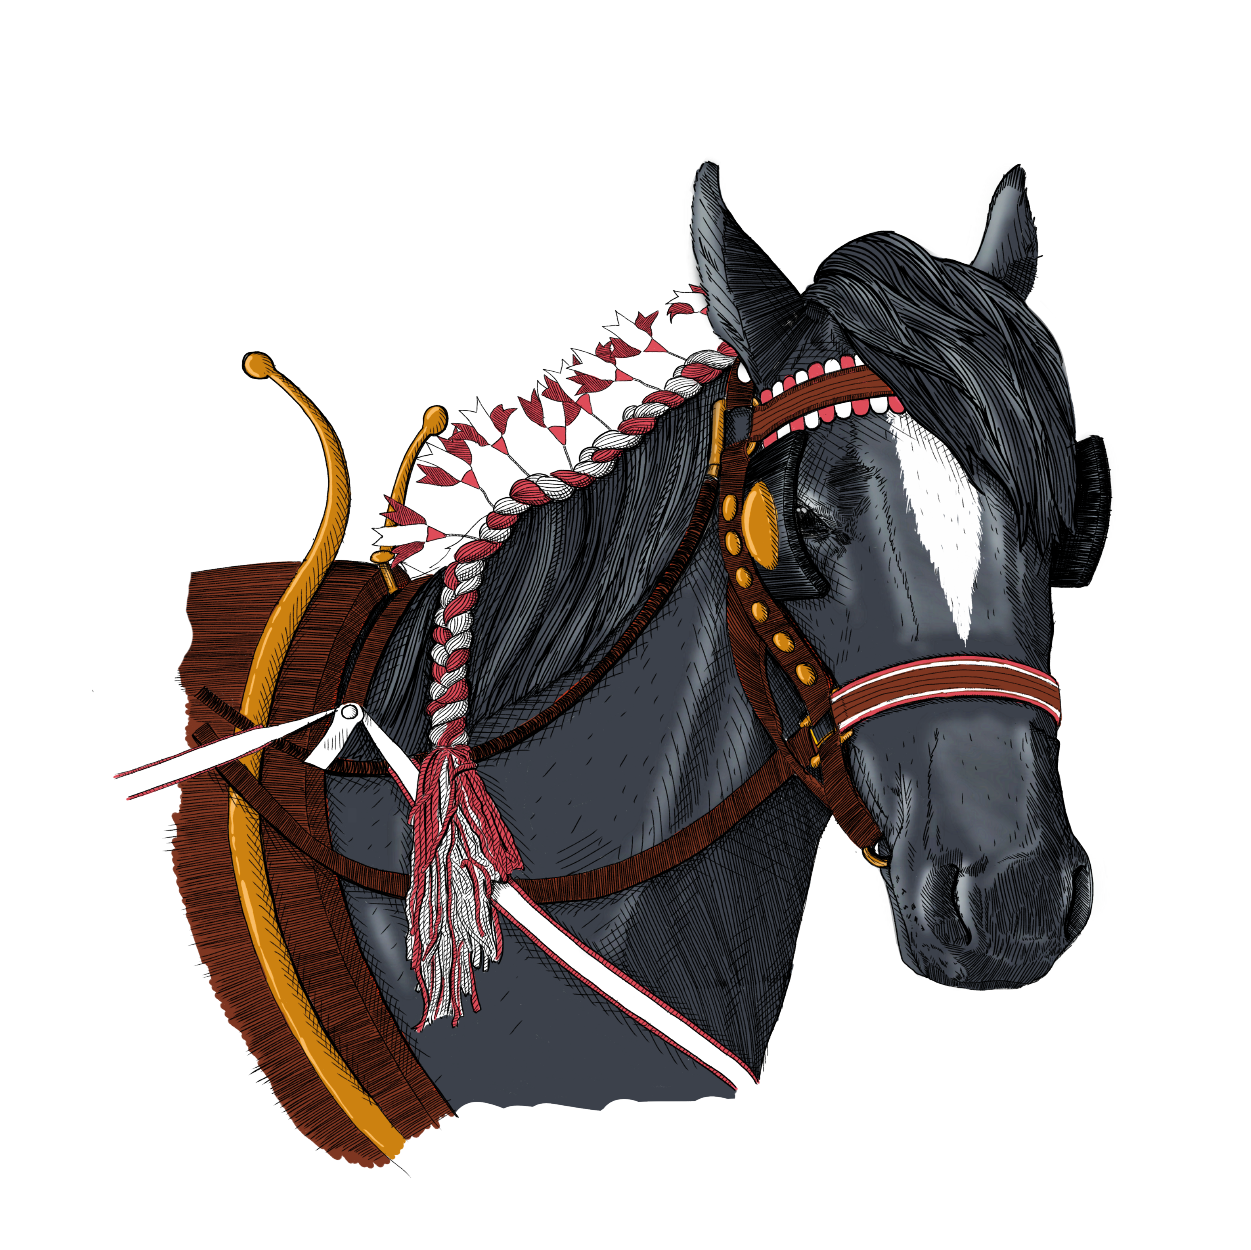 Black horse with saddle